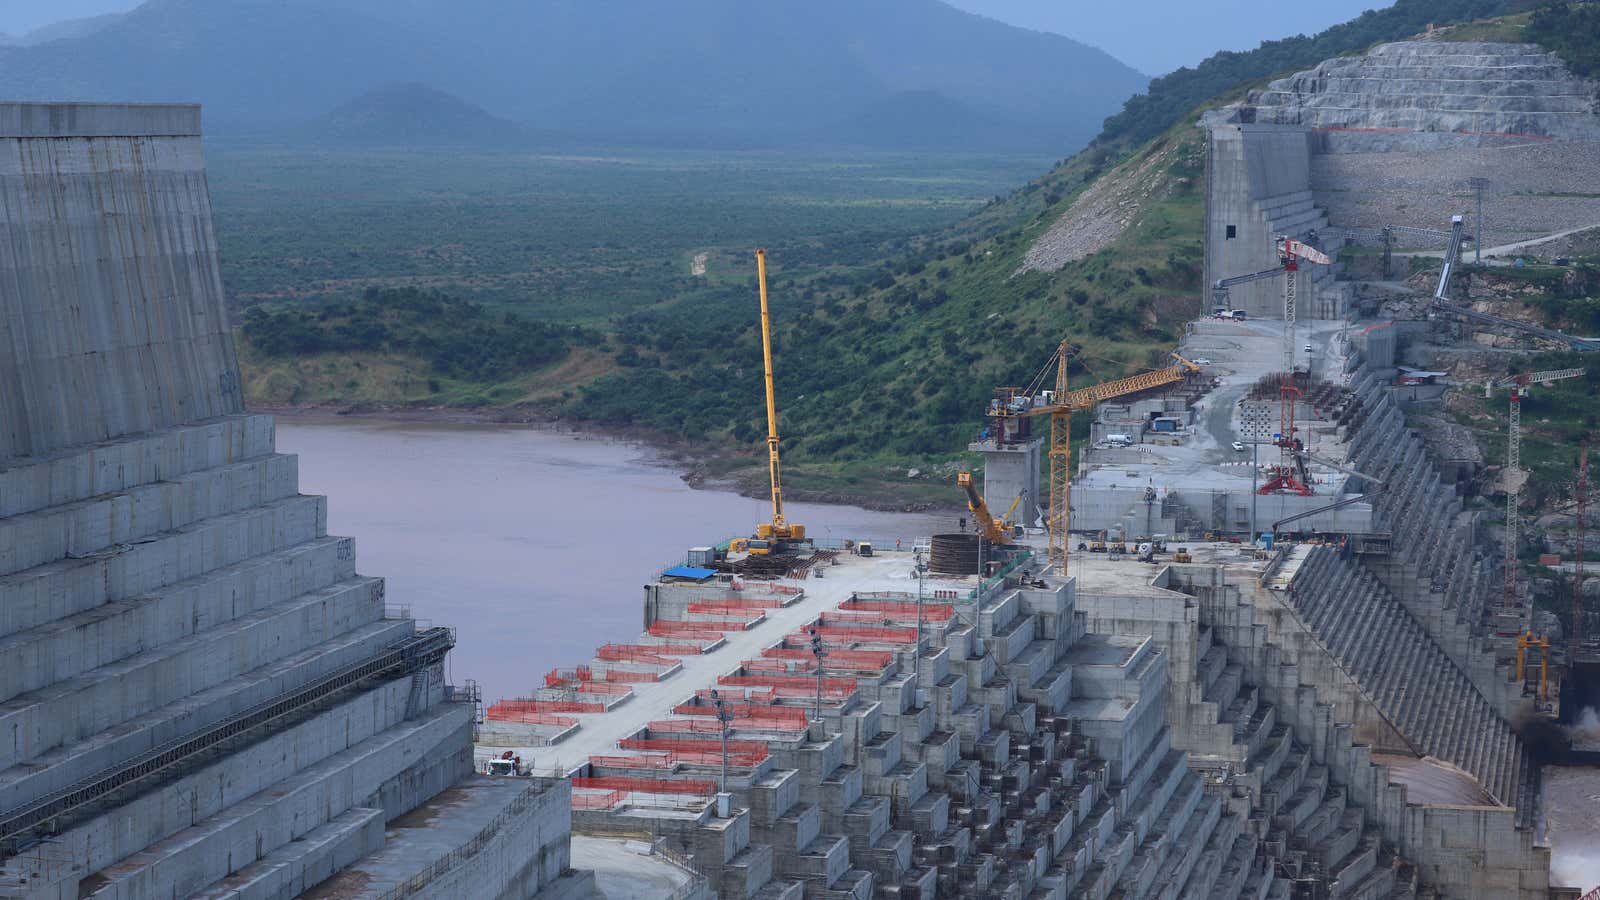 Ethiopia’s Grand Renaissance Dam